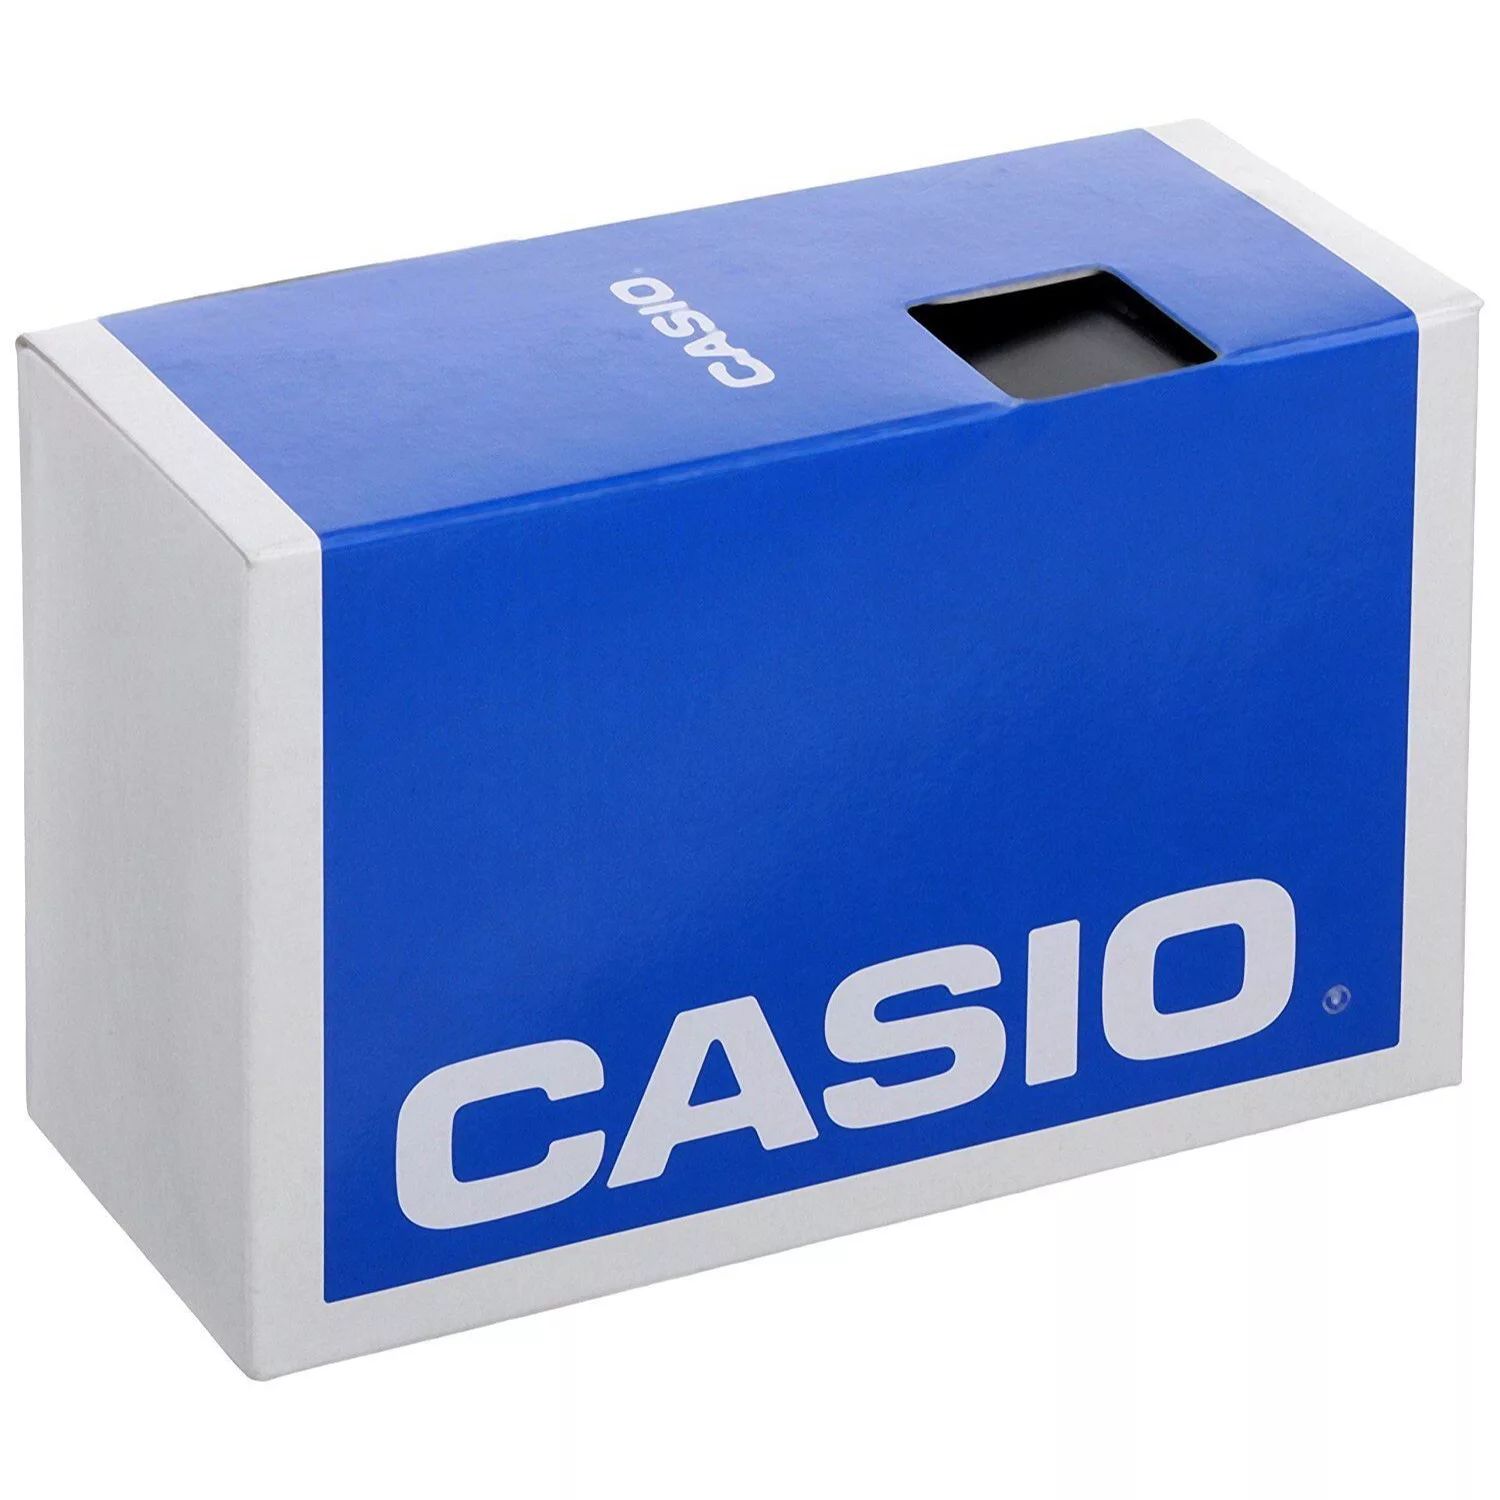 цена Мужские сверхмощные металлические цифровые часы Casio